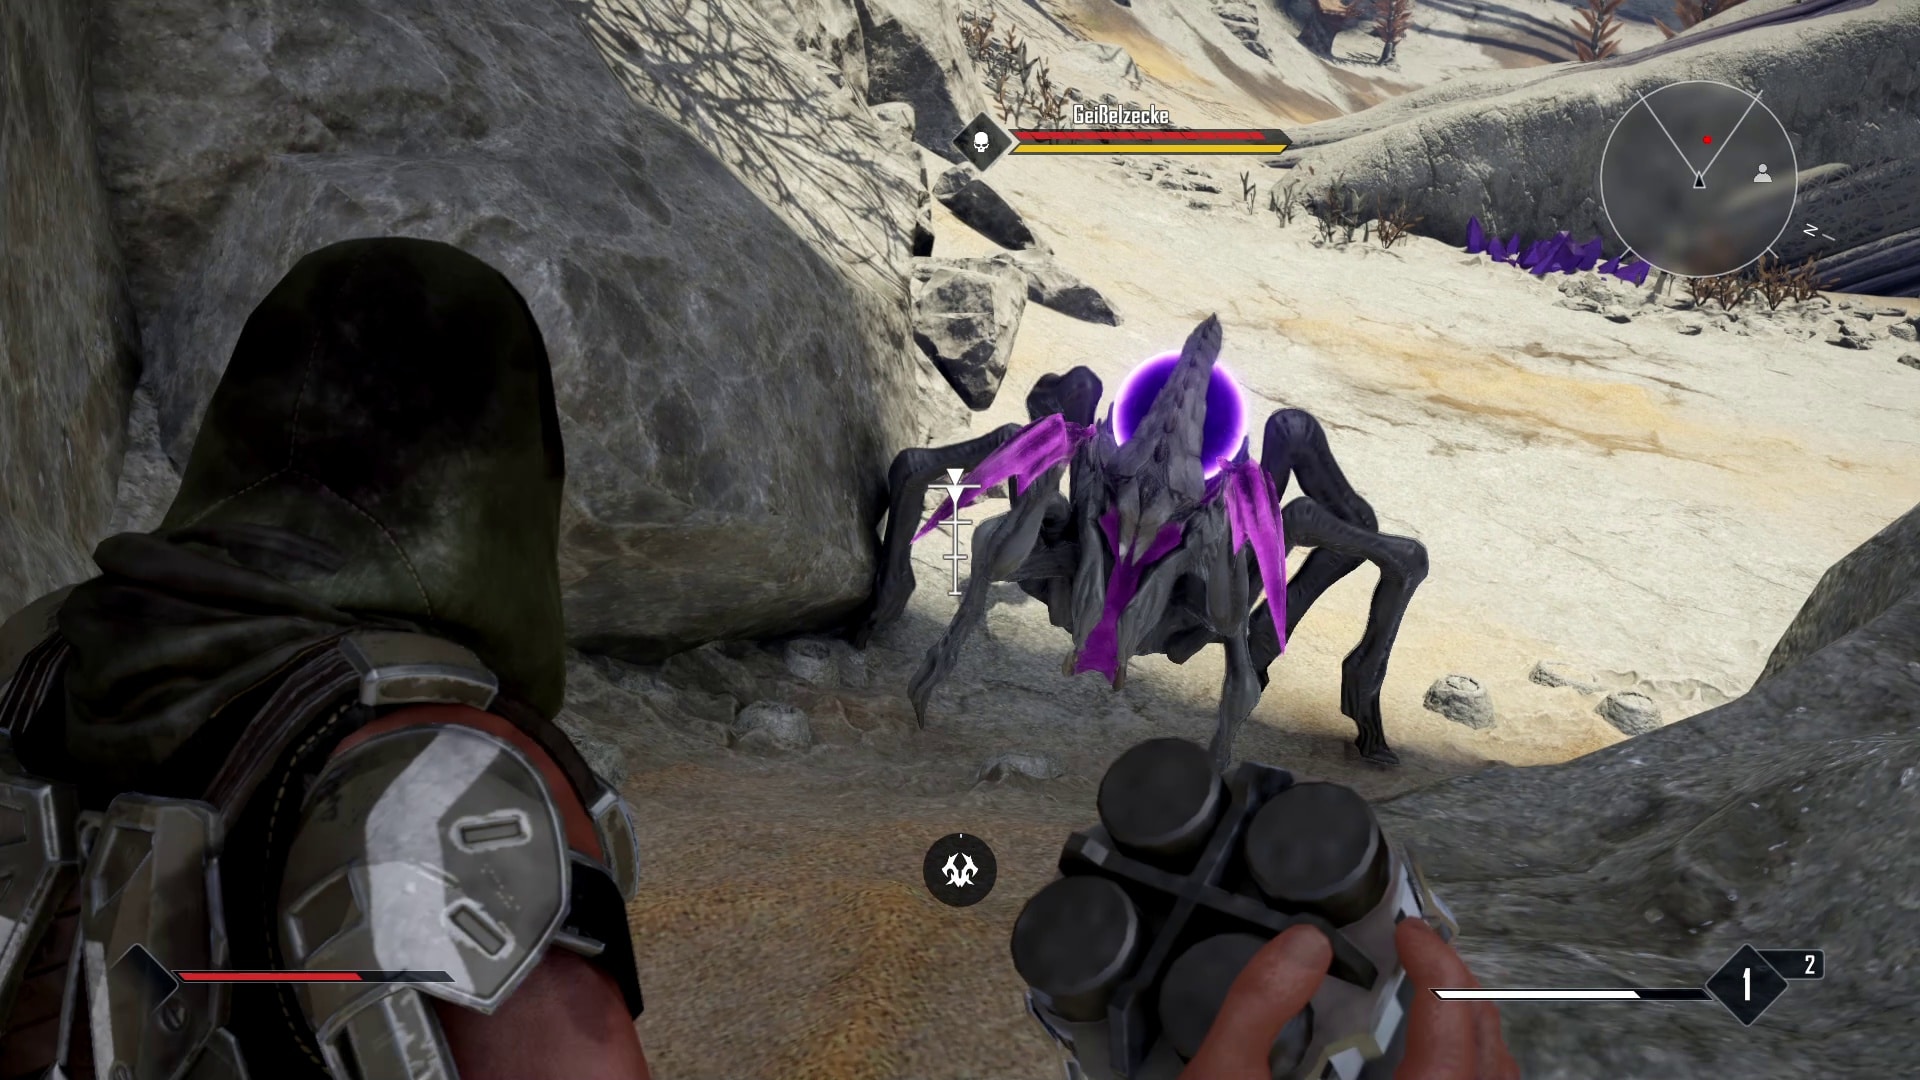 Les Skyanids violets sont extrêmement puissants au début ; la tête de mort à côté de la barre de vie indique que cette araignée vous tuera en un rien de temps